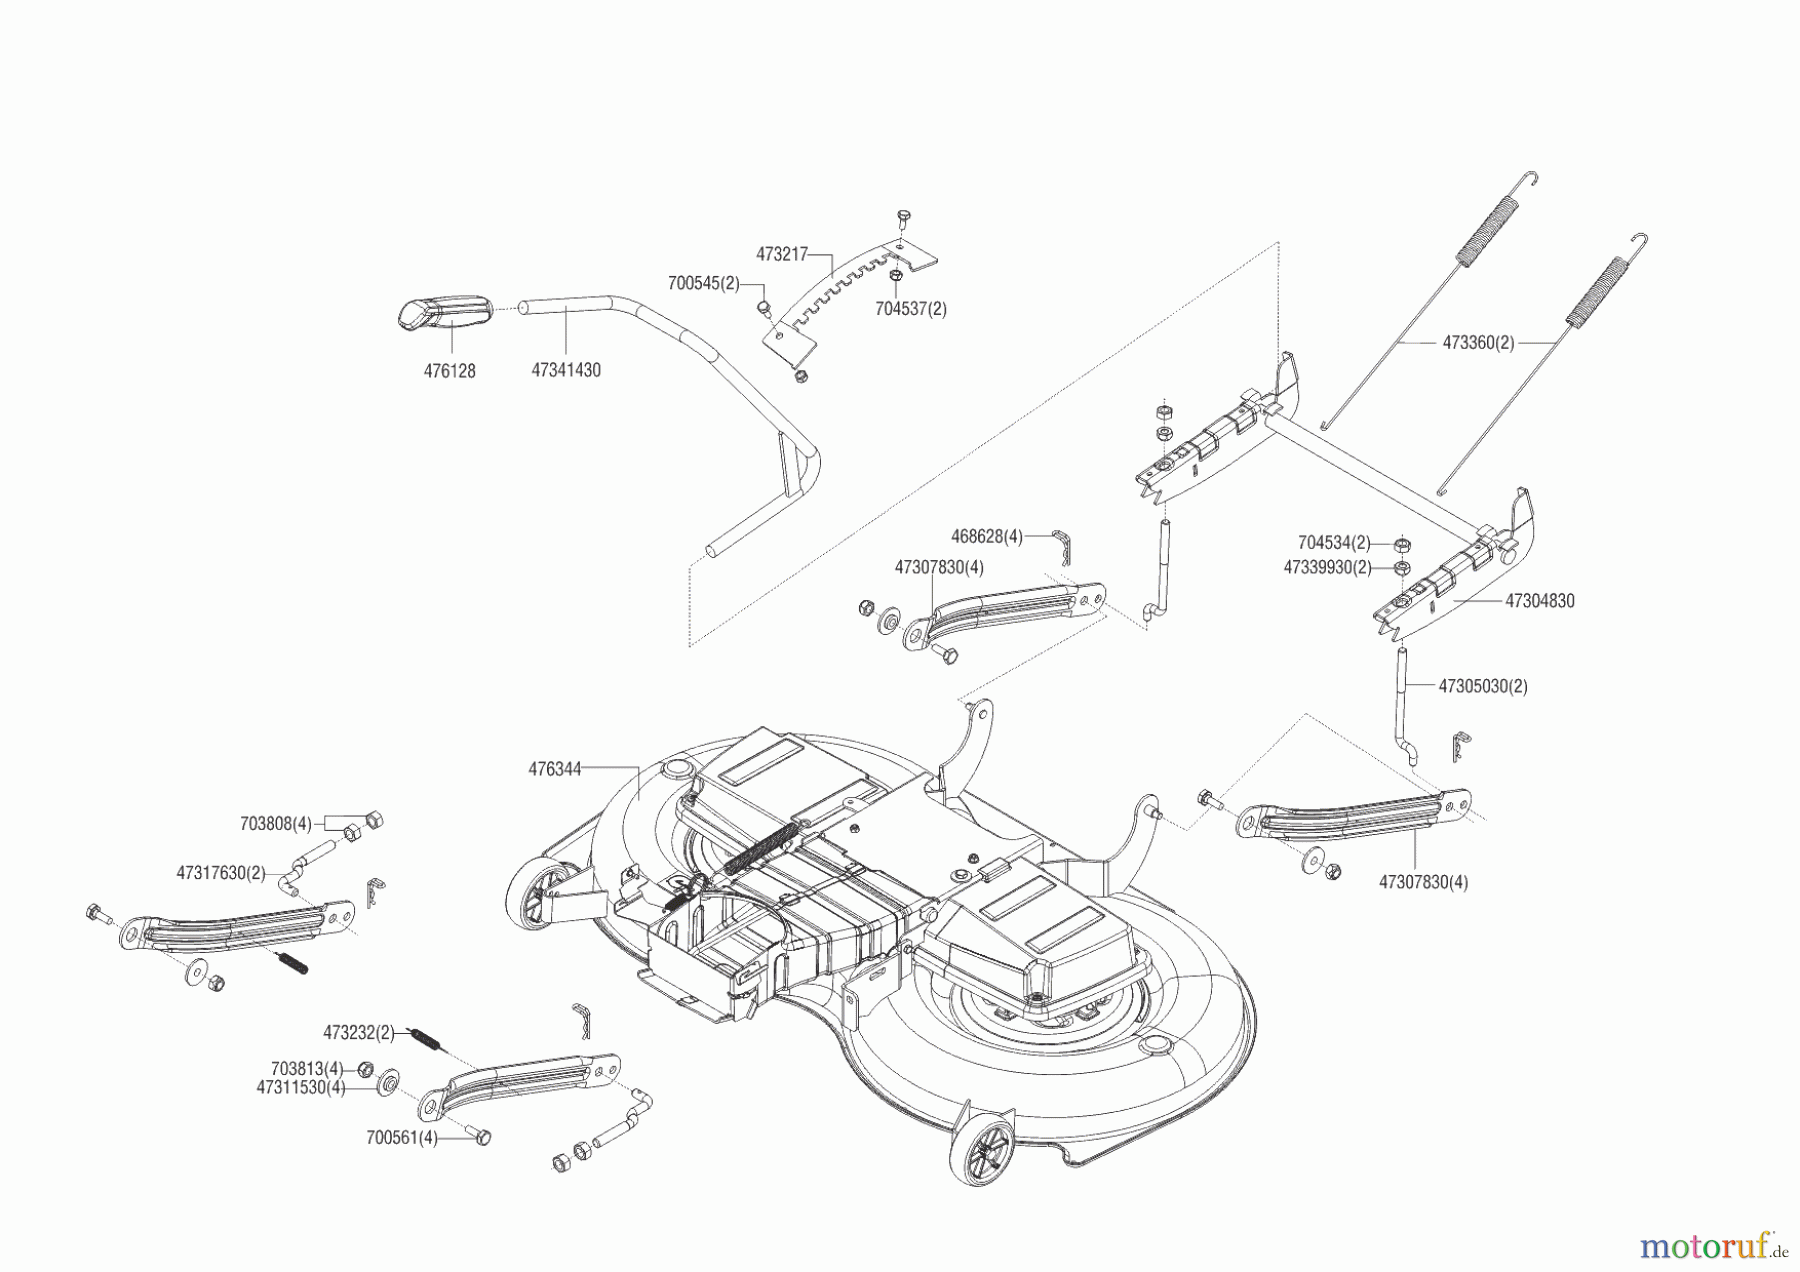  Brill Gartentechnik Rasentraktor Crossover T 125/23 H  ab 05/2015 Seite 5